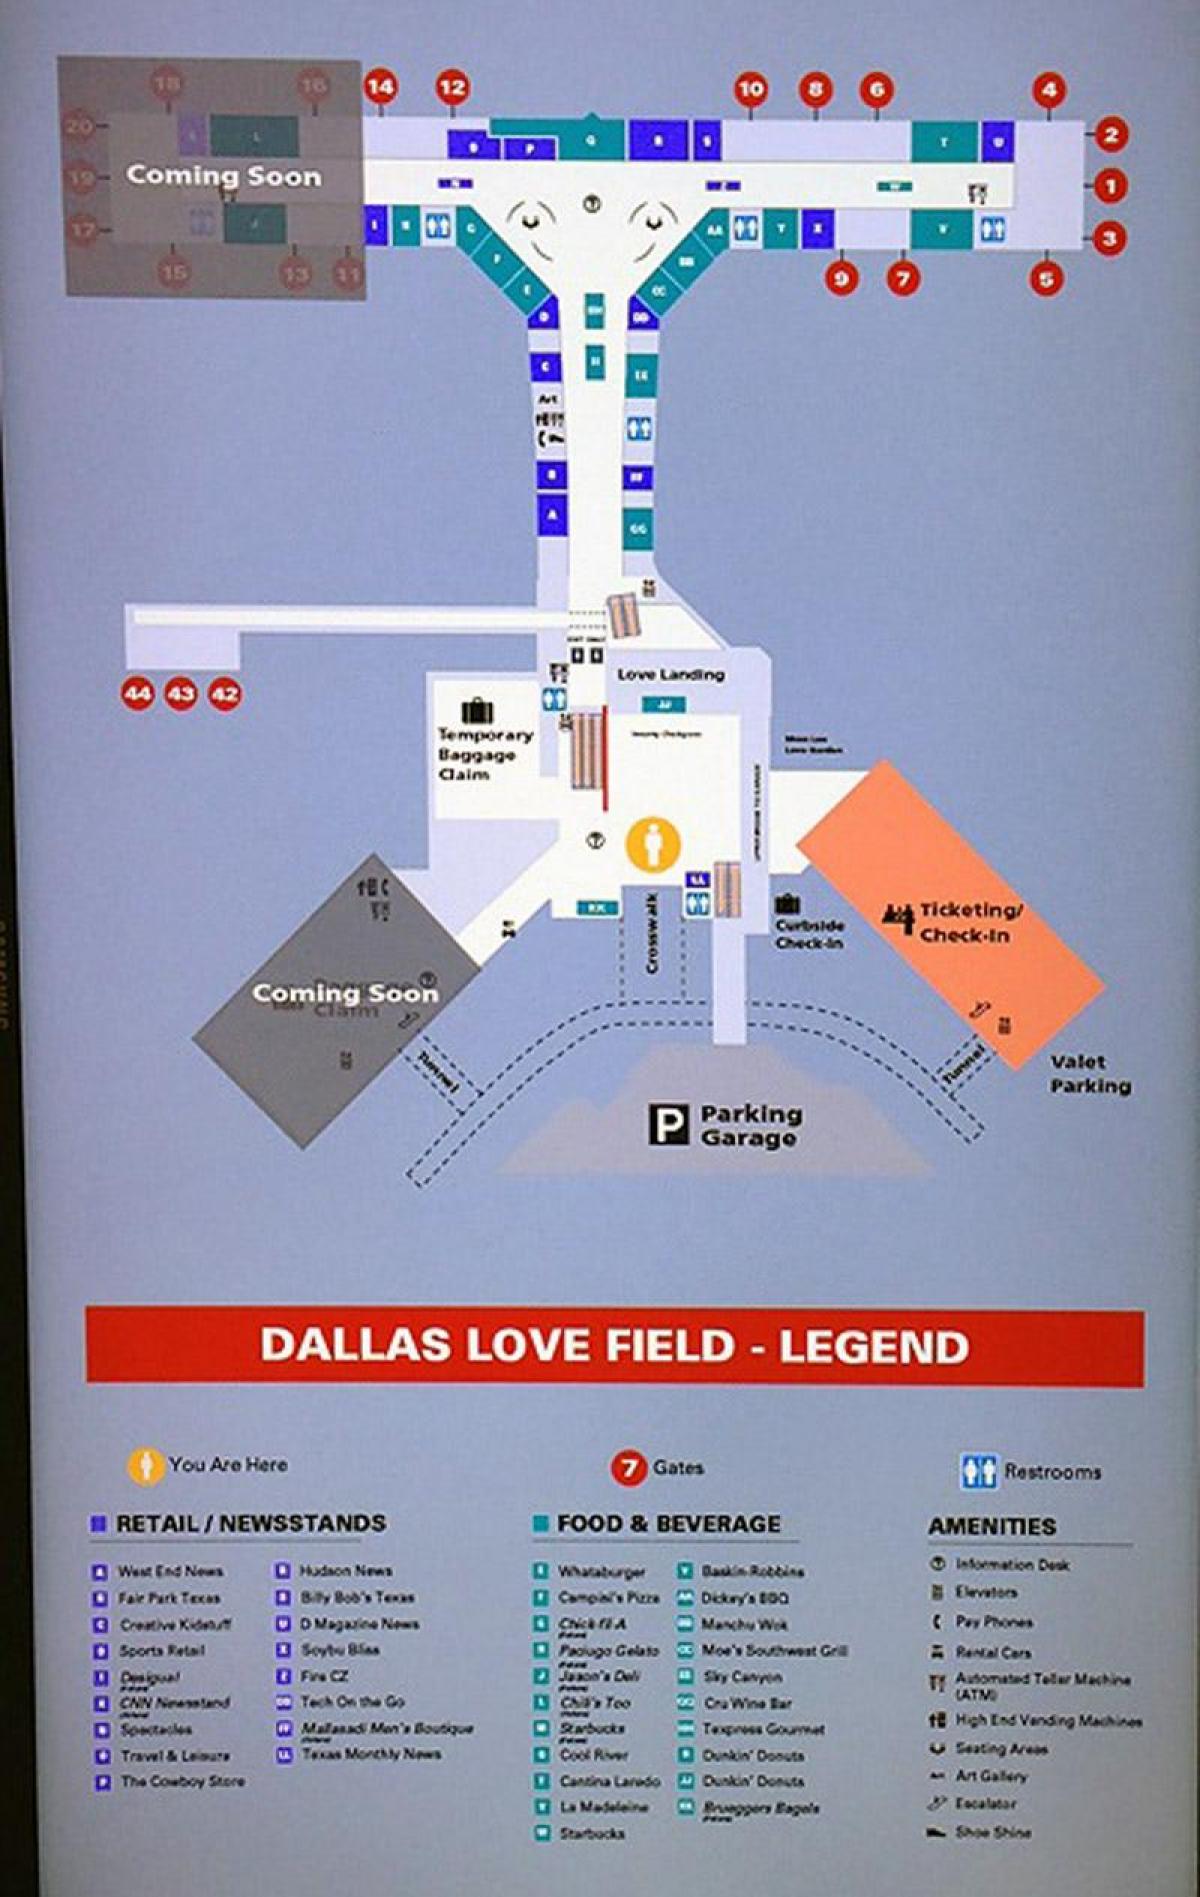 ڈلاس محبت کے میدان ہوائی اڈے کا نقشہ